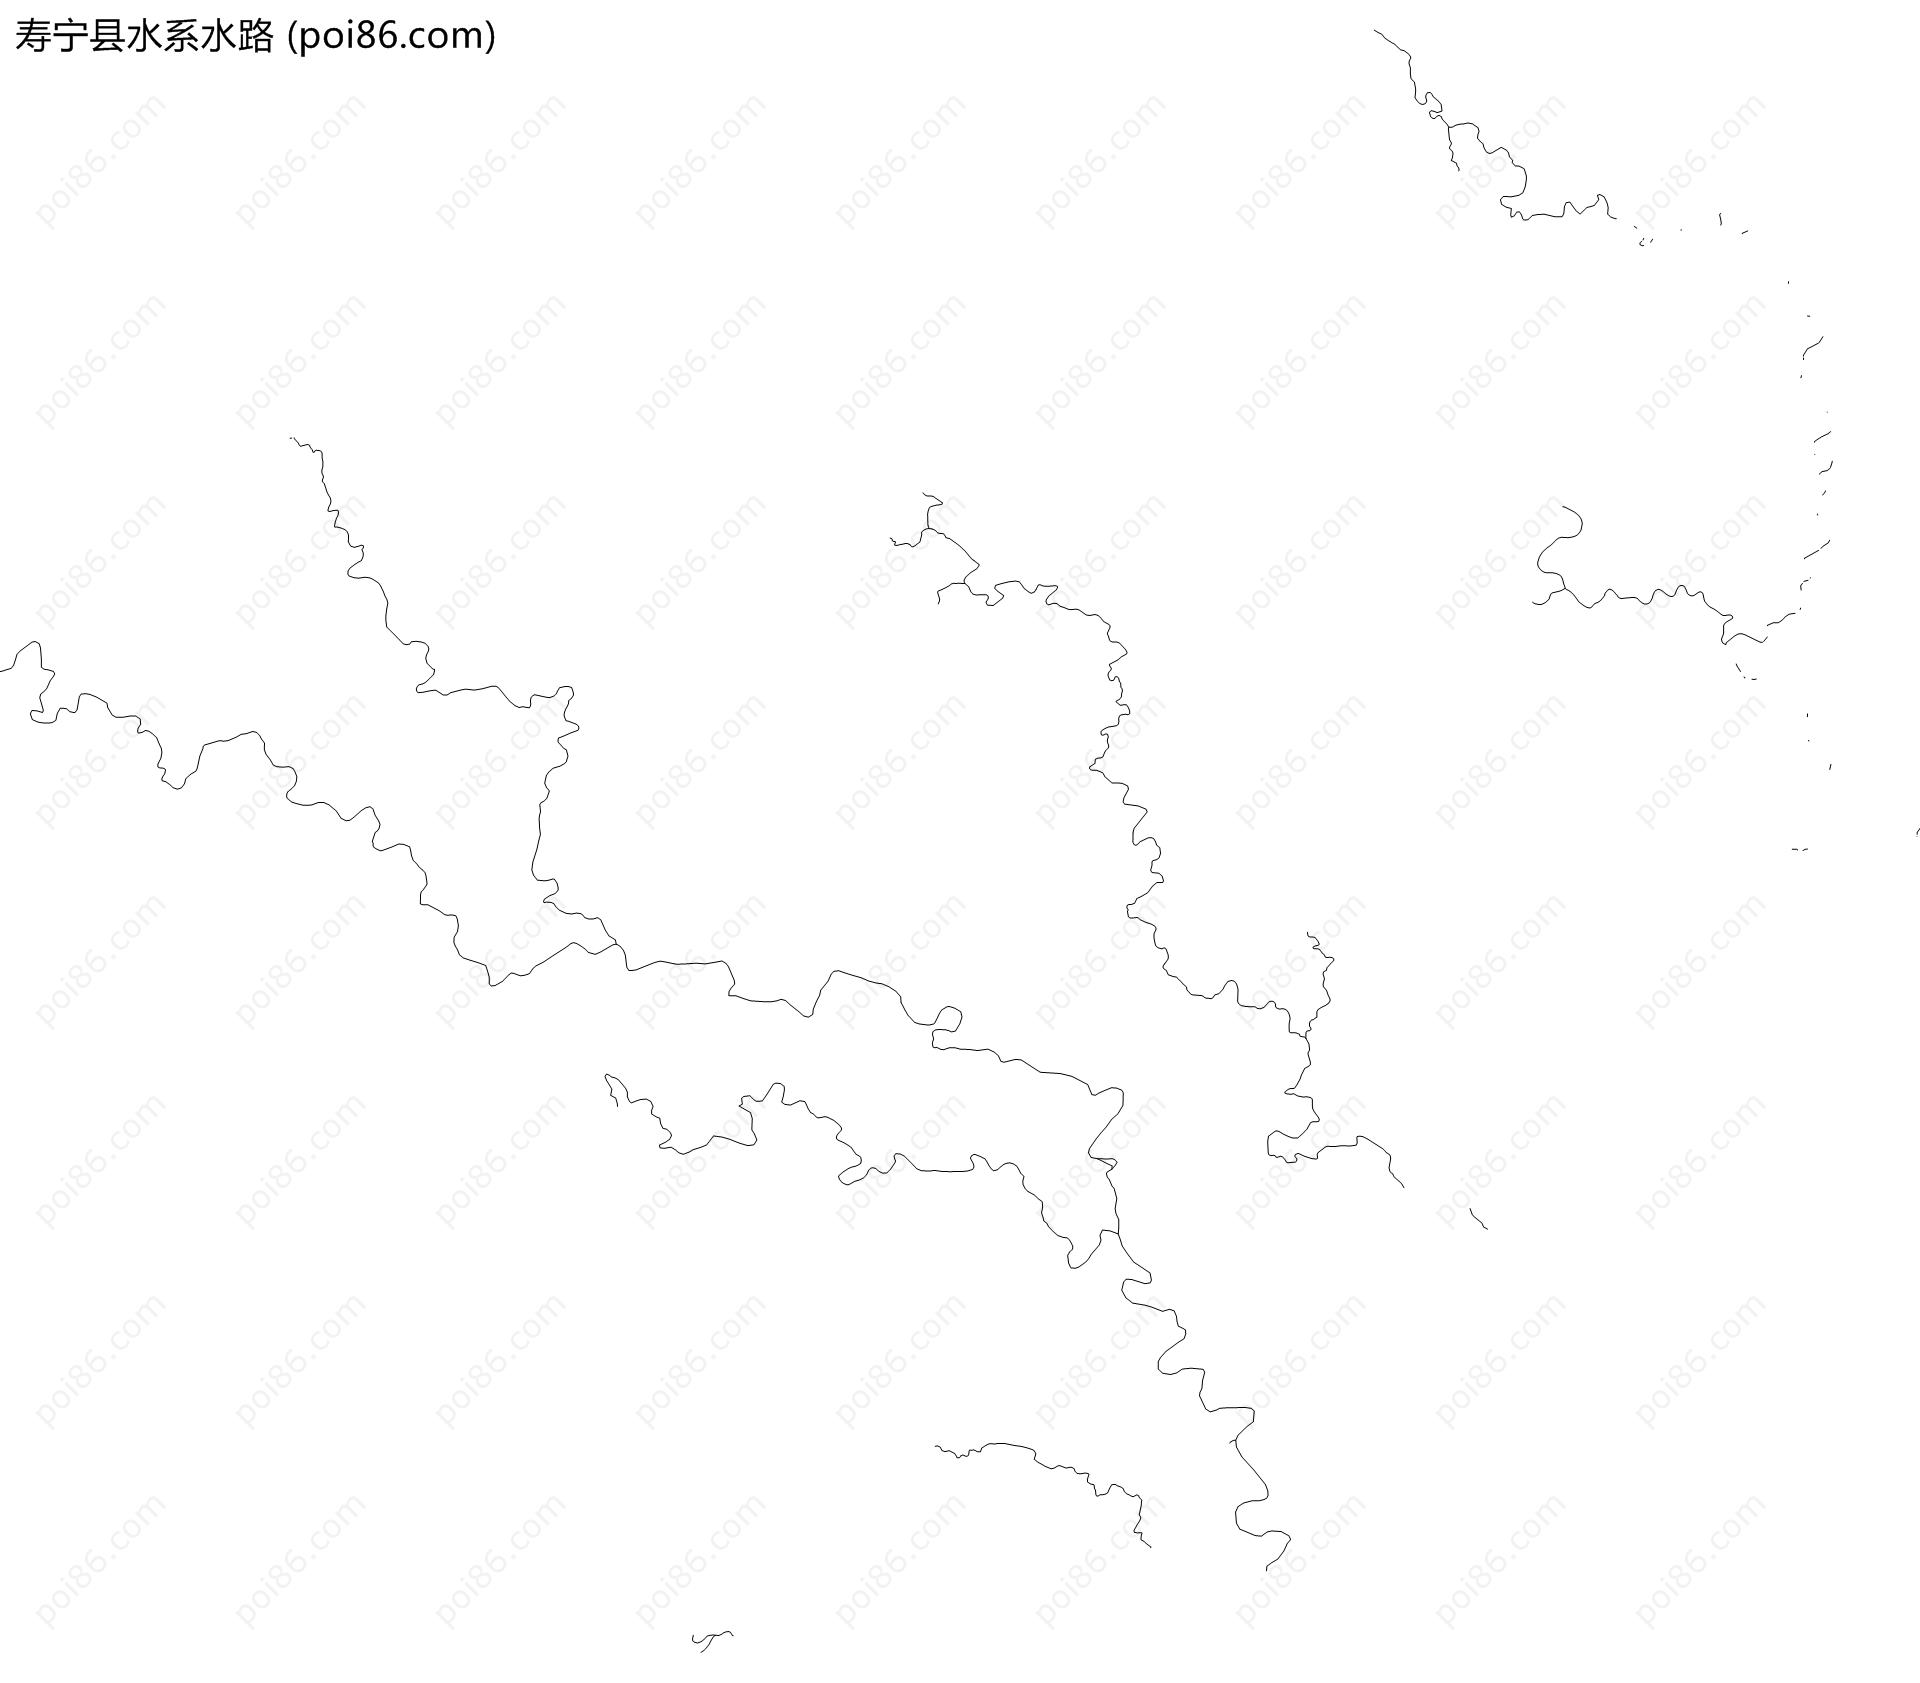 寿宁县水系水路地图